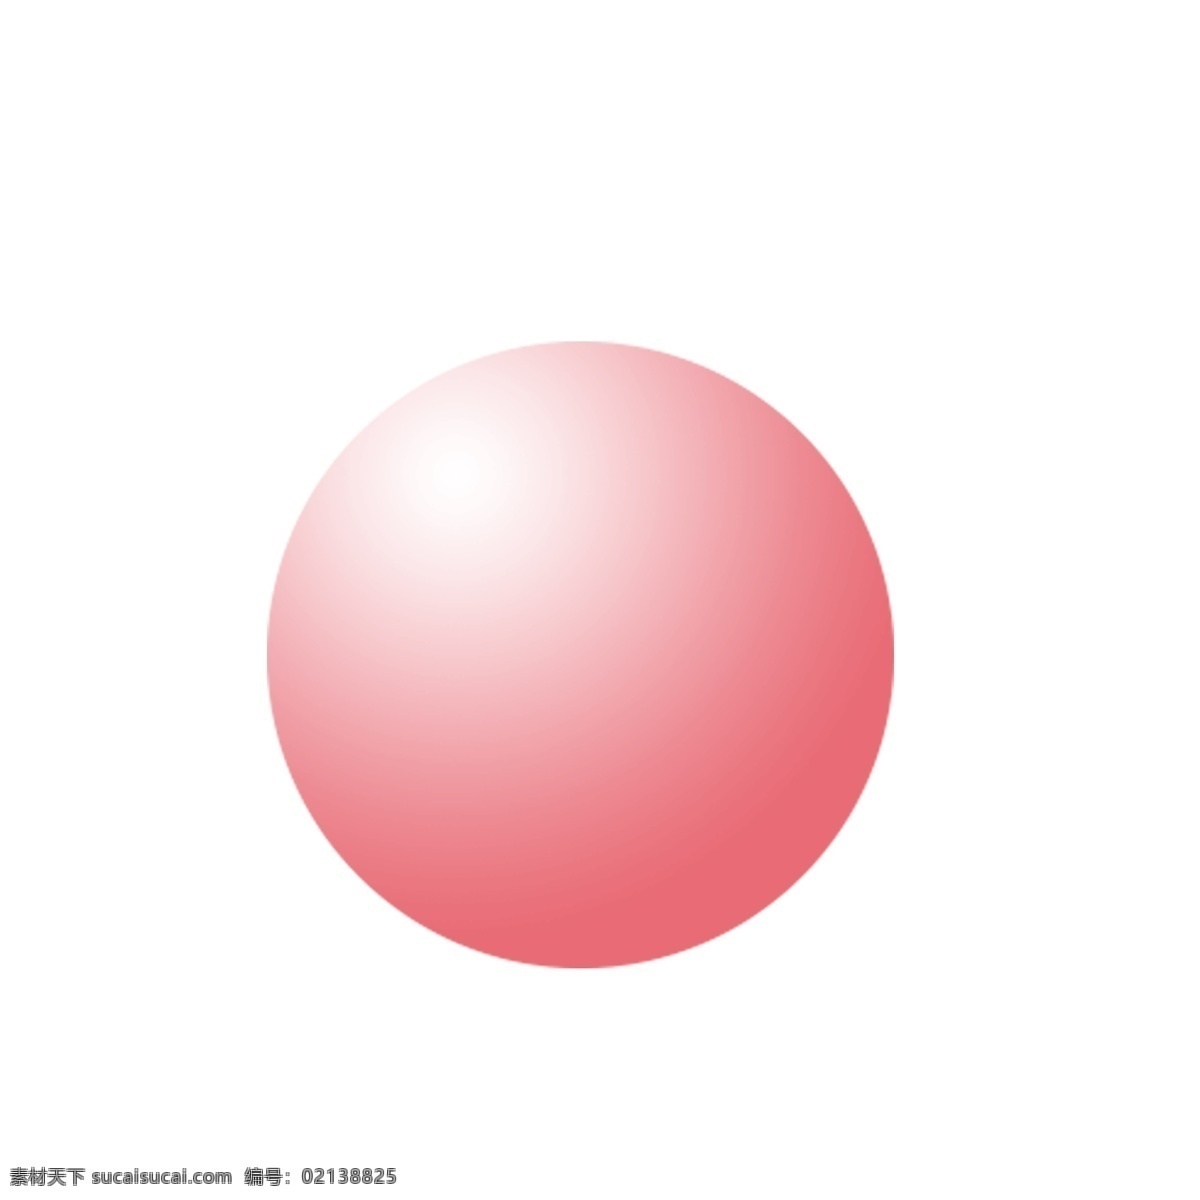 粉色 渐变 圆球 免 扣 图 卡通球 粉色圆形球 免扣图 粉色渐变球 渐变的圆球